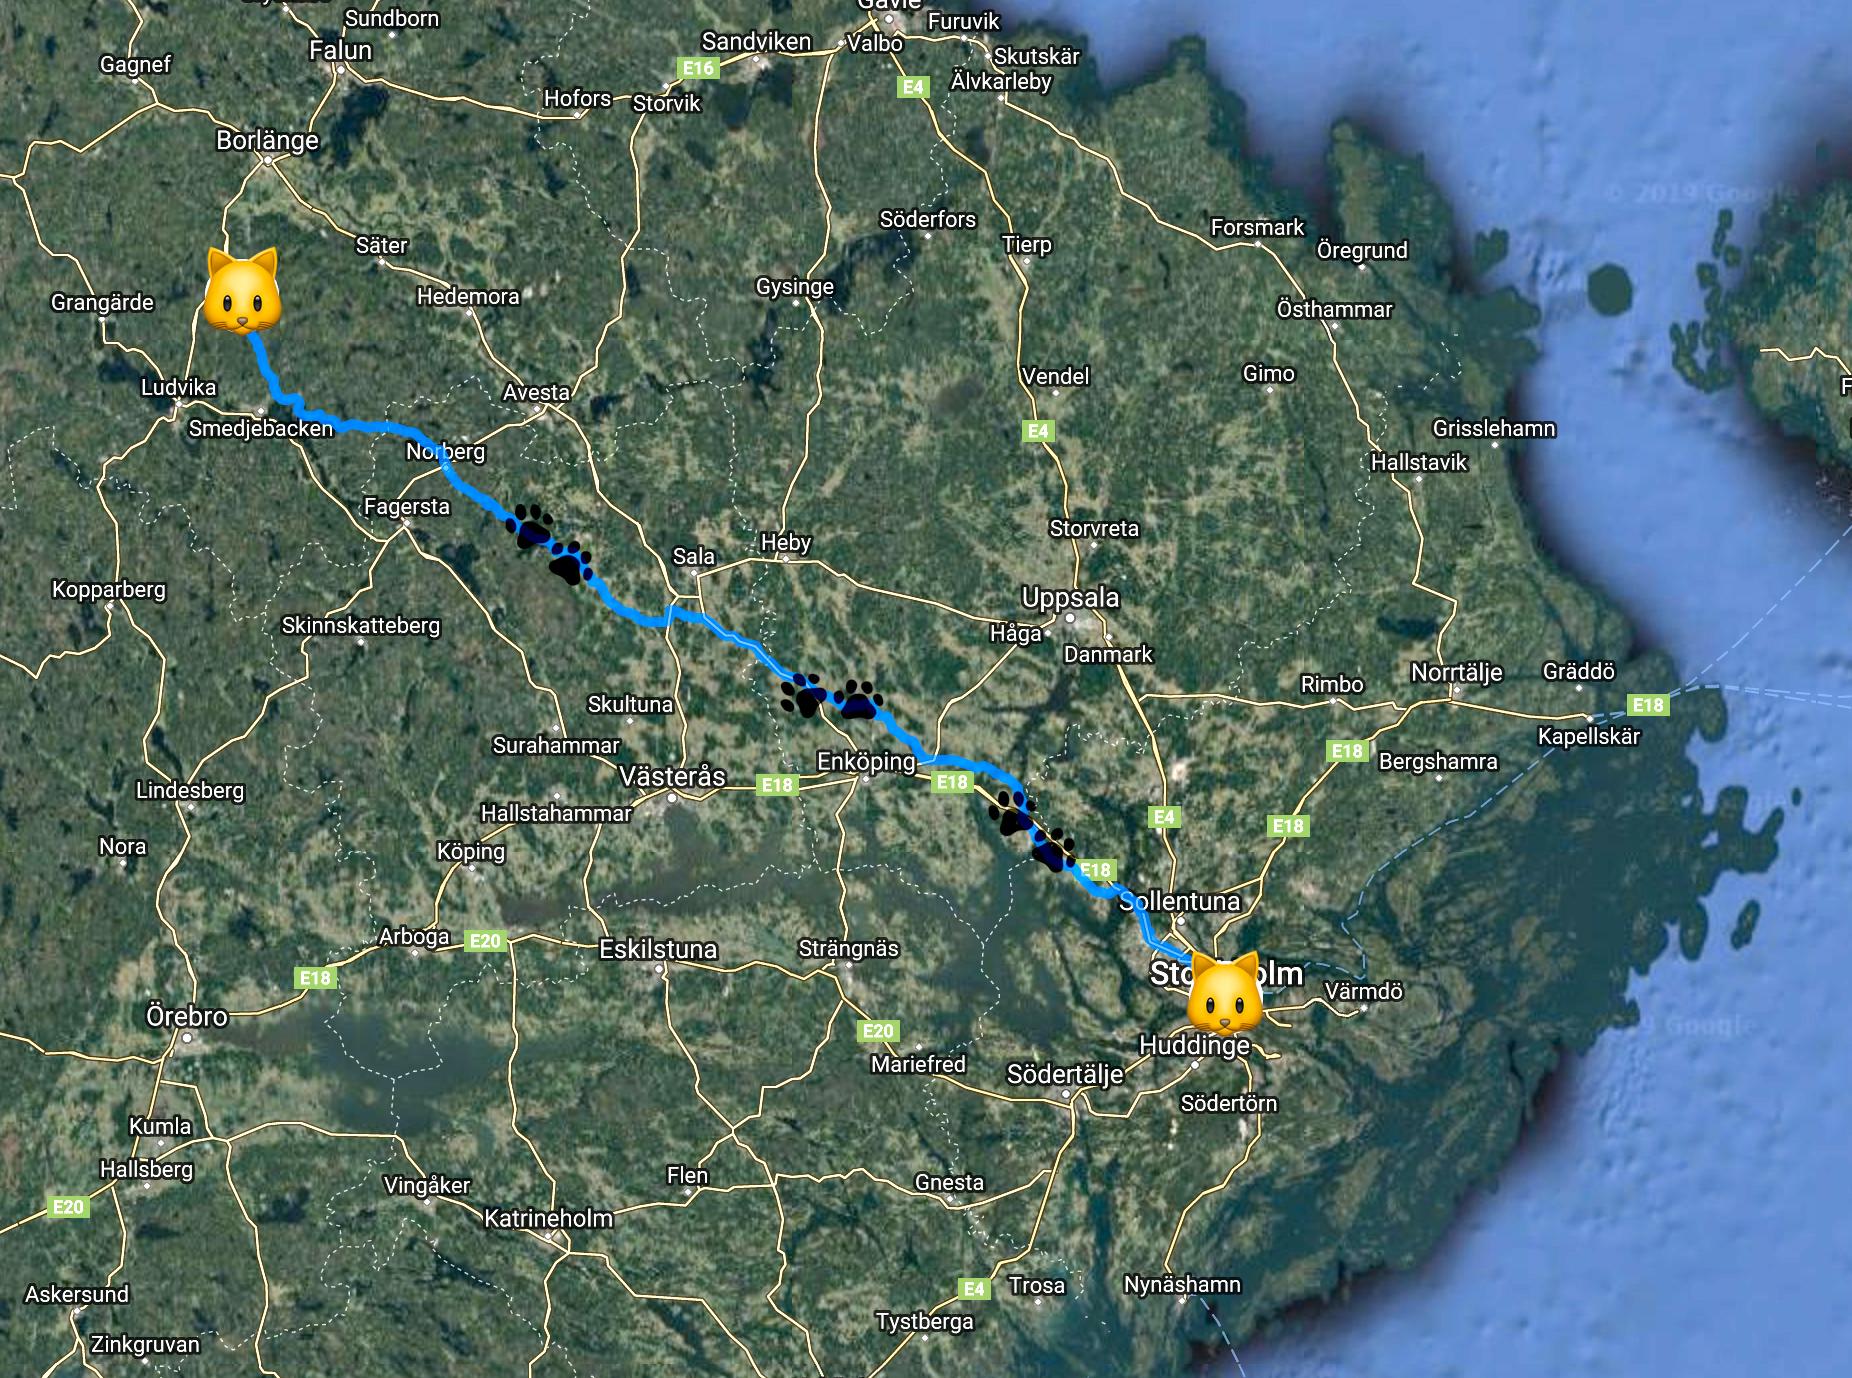 Musses vandringsled var cirka 200 kilometer, från Stockholm till Ulvshyttan utanför Borlänge.